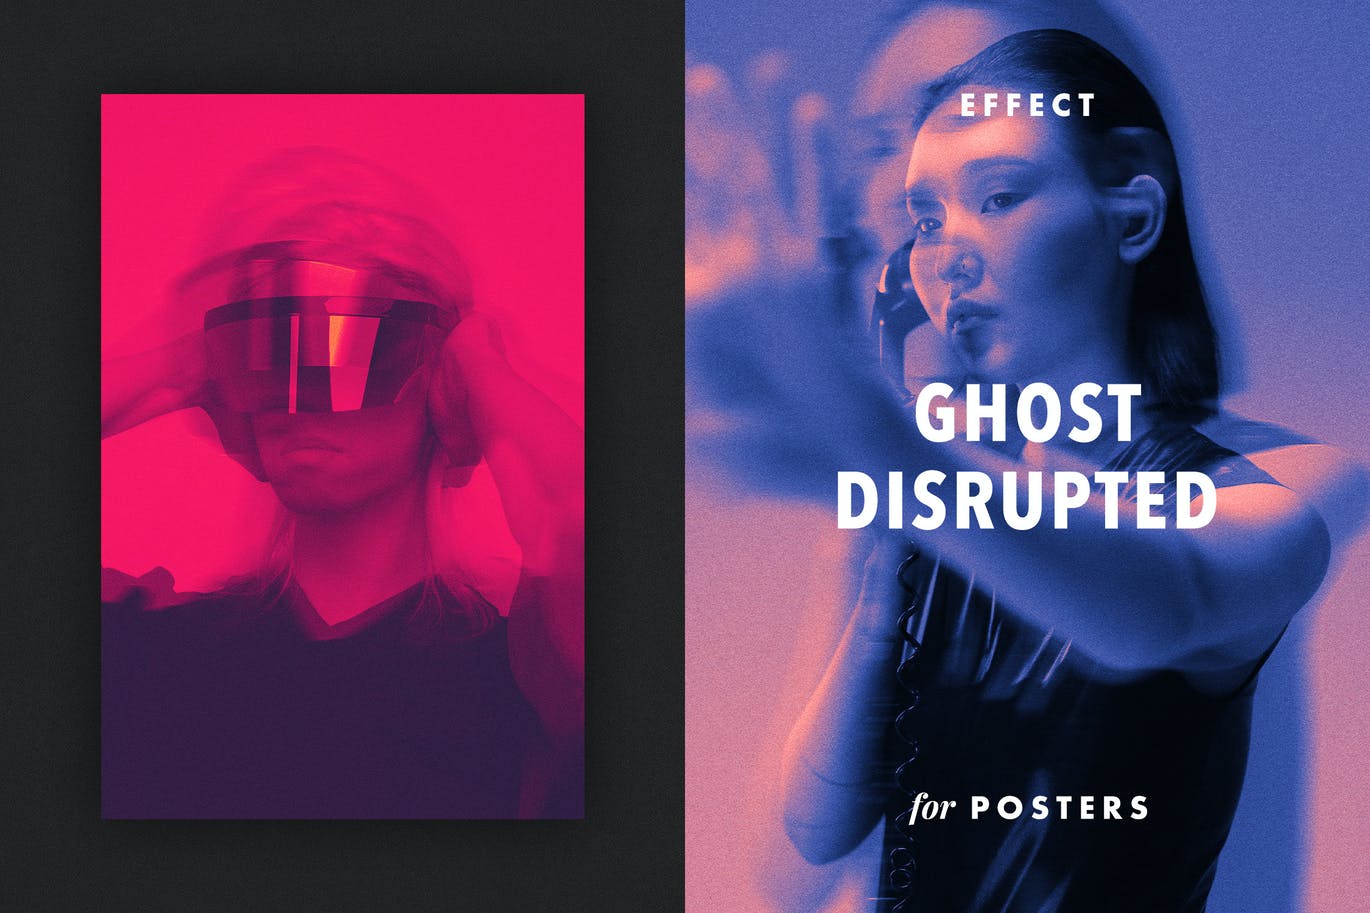 幽灵滤镜效果海报模板 Ghost Disrupted Effect for Posters 插件预设 第1张